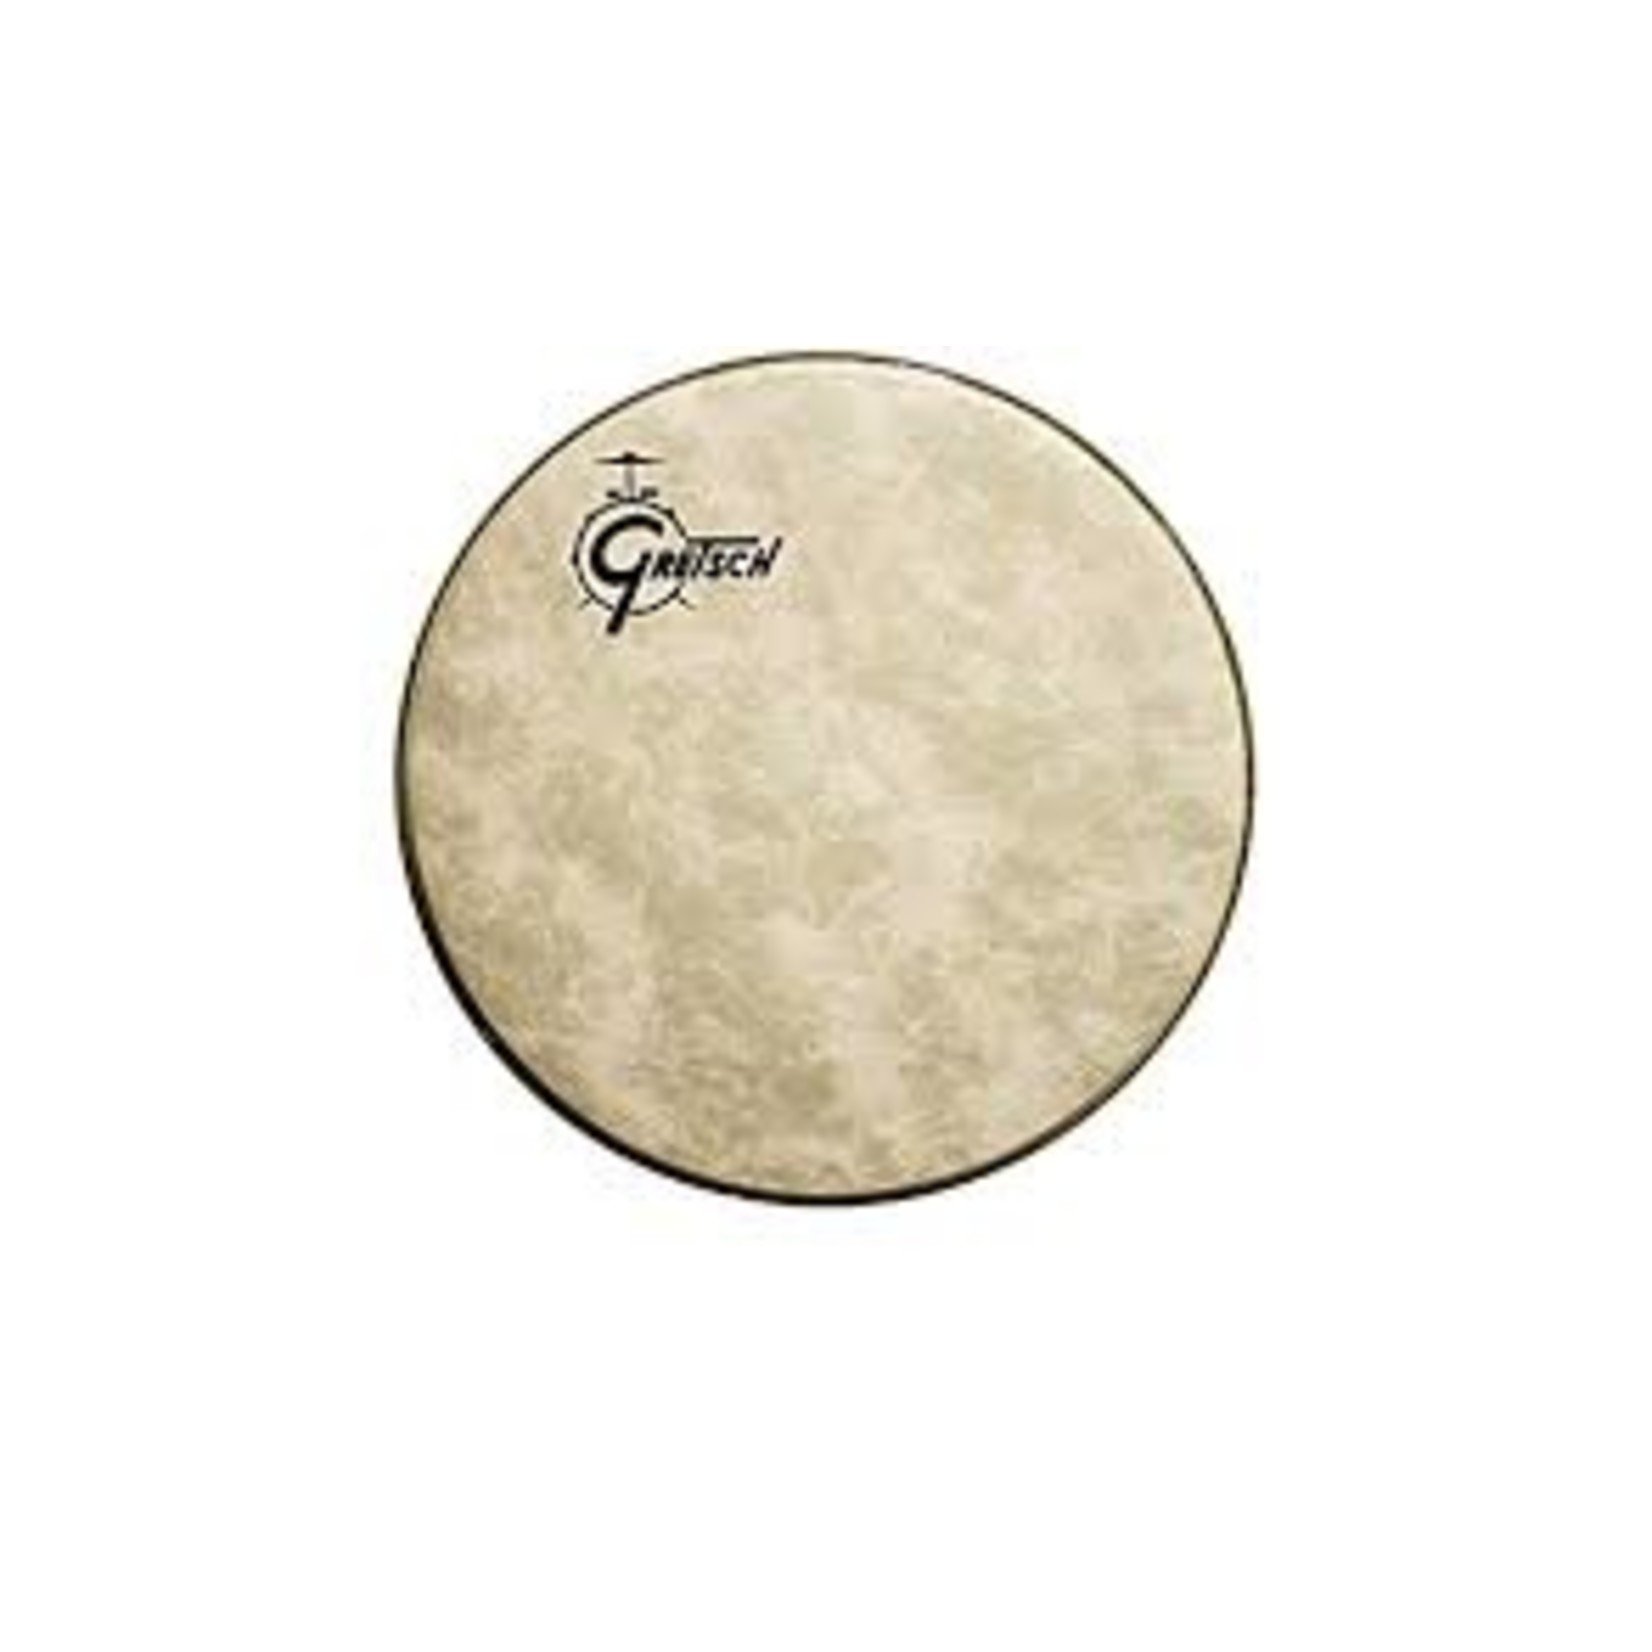 Gretsch Gretsch Fiberskyn Bass Drum Head, Offset Logo